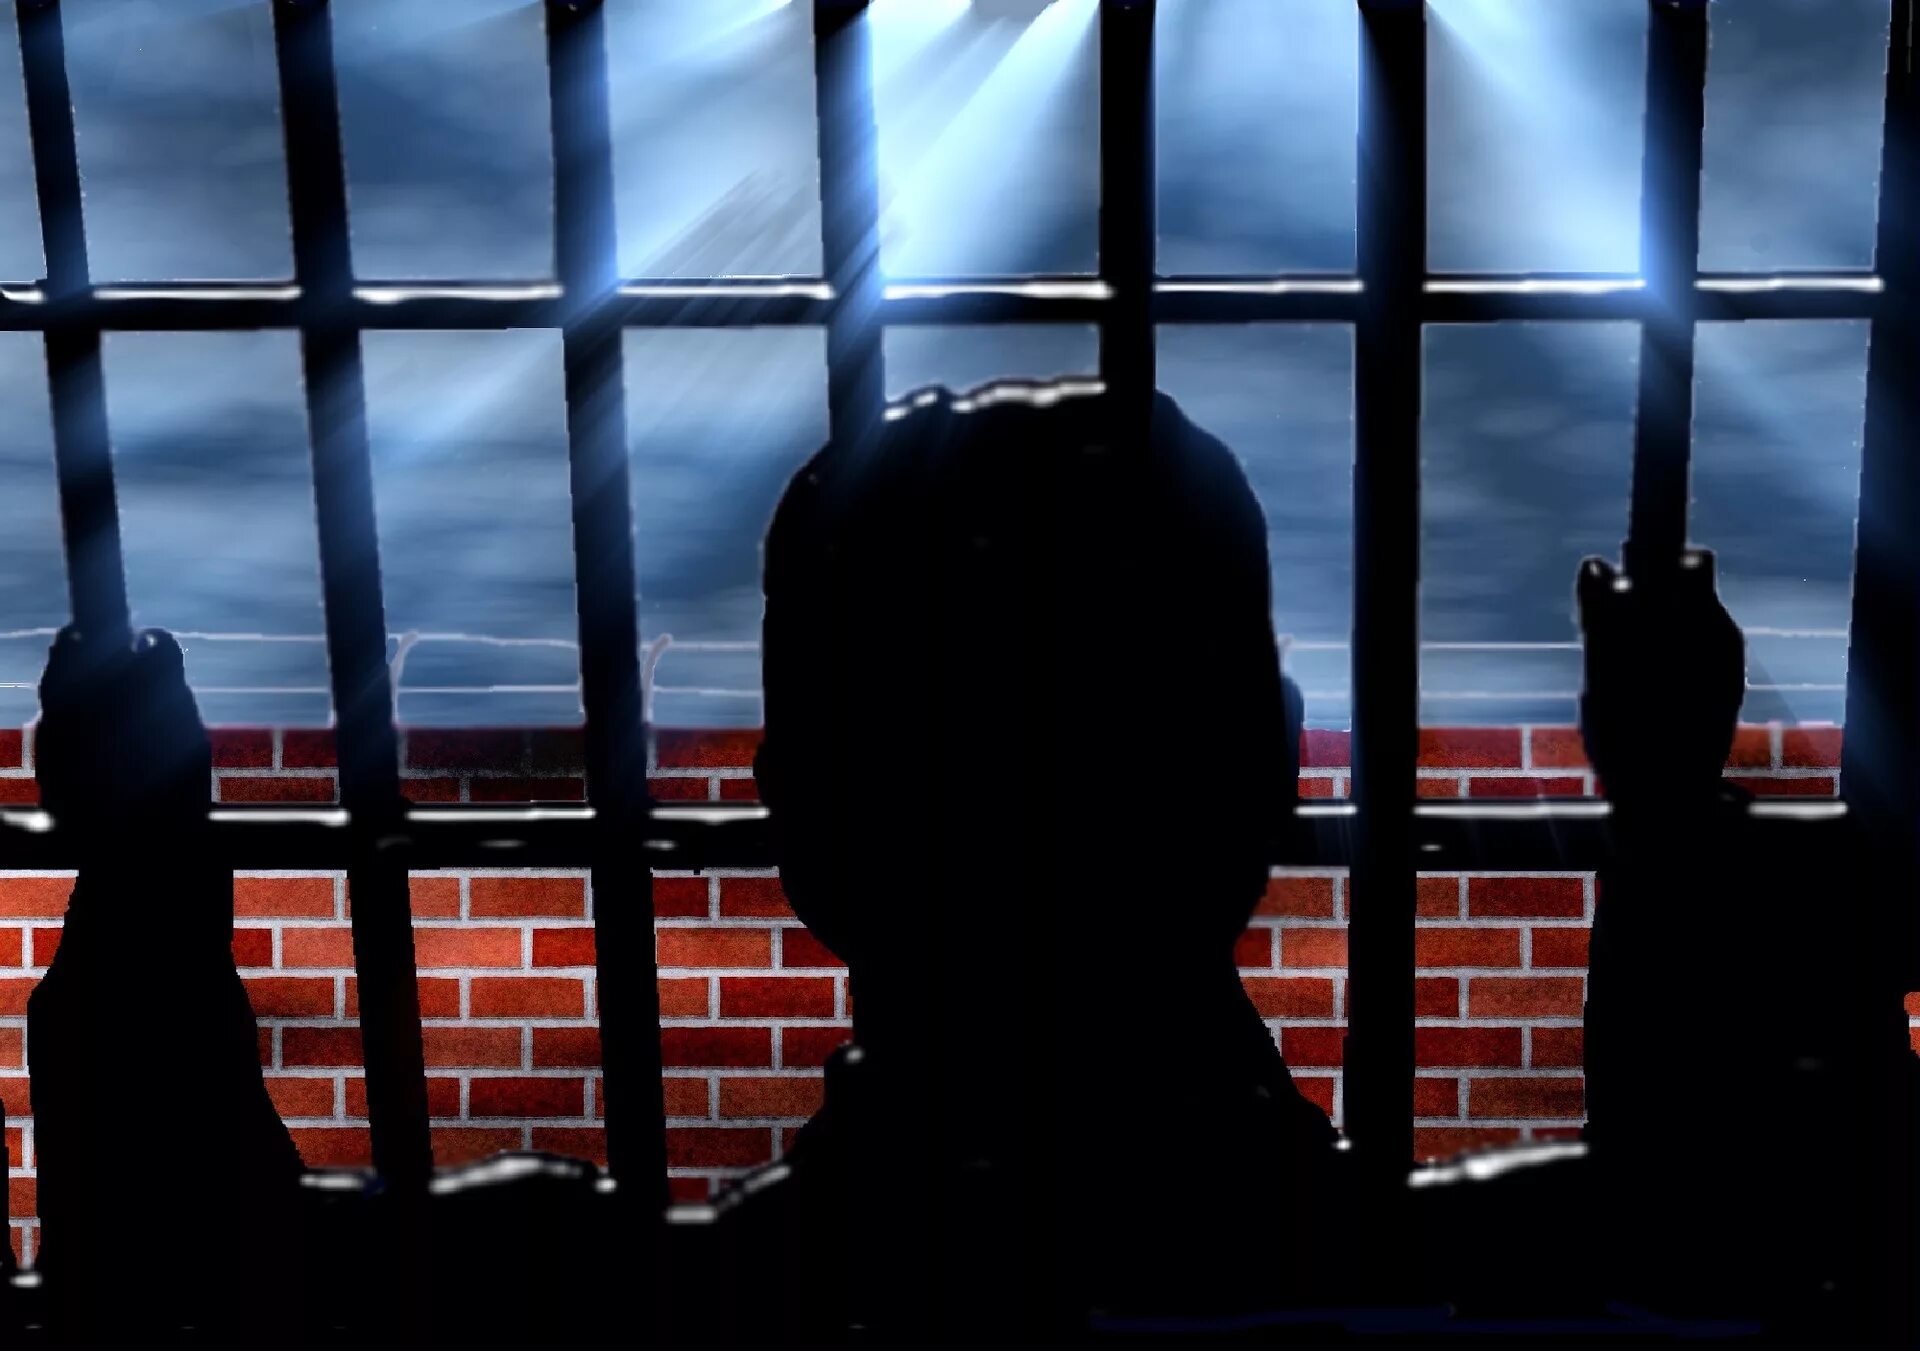 Небо в клетку. Тюремная решетка. Окно за решеткой. Вид из тюремного окна. Человек за решеткой.